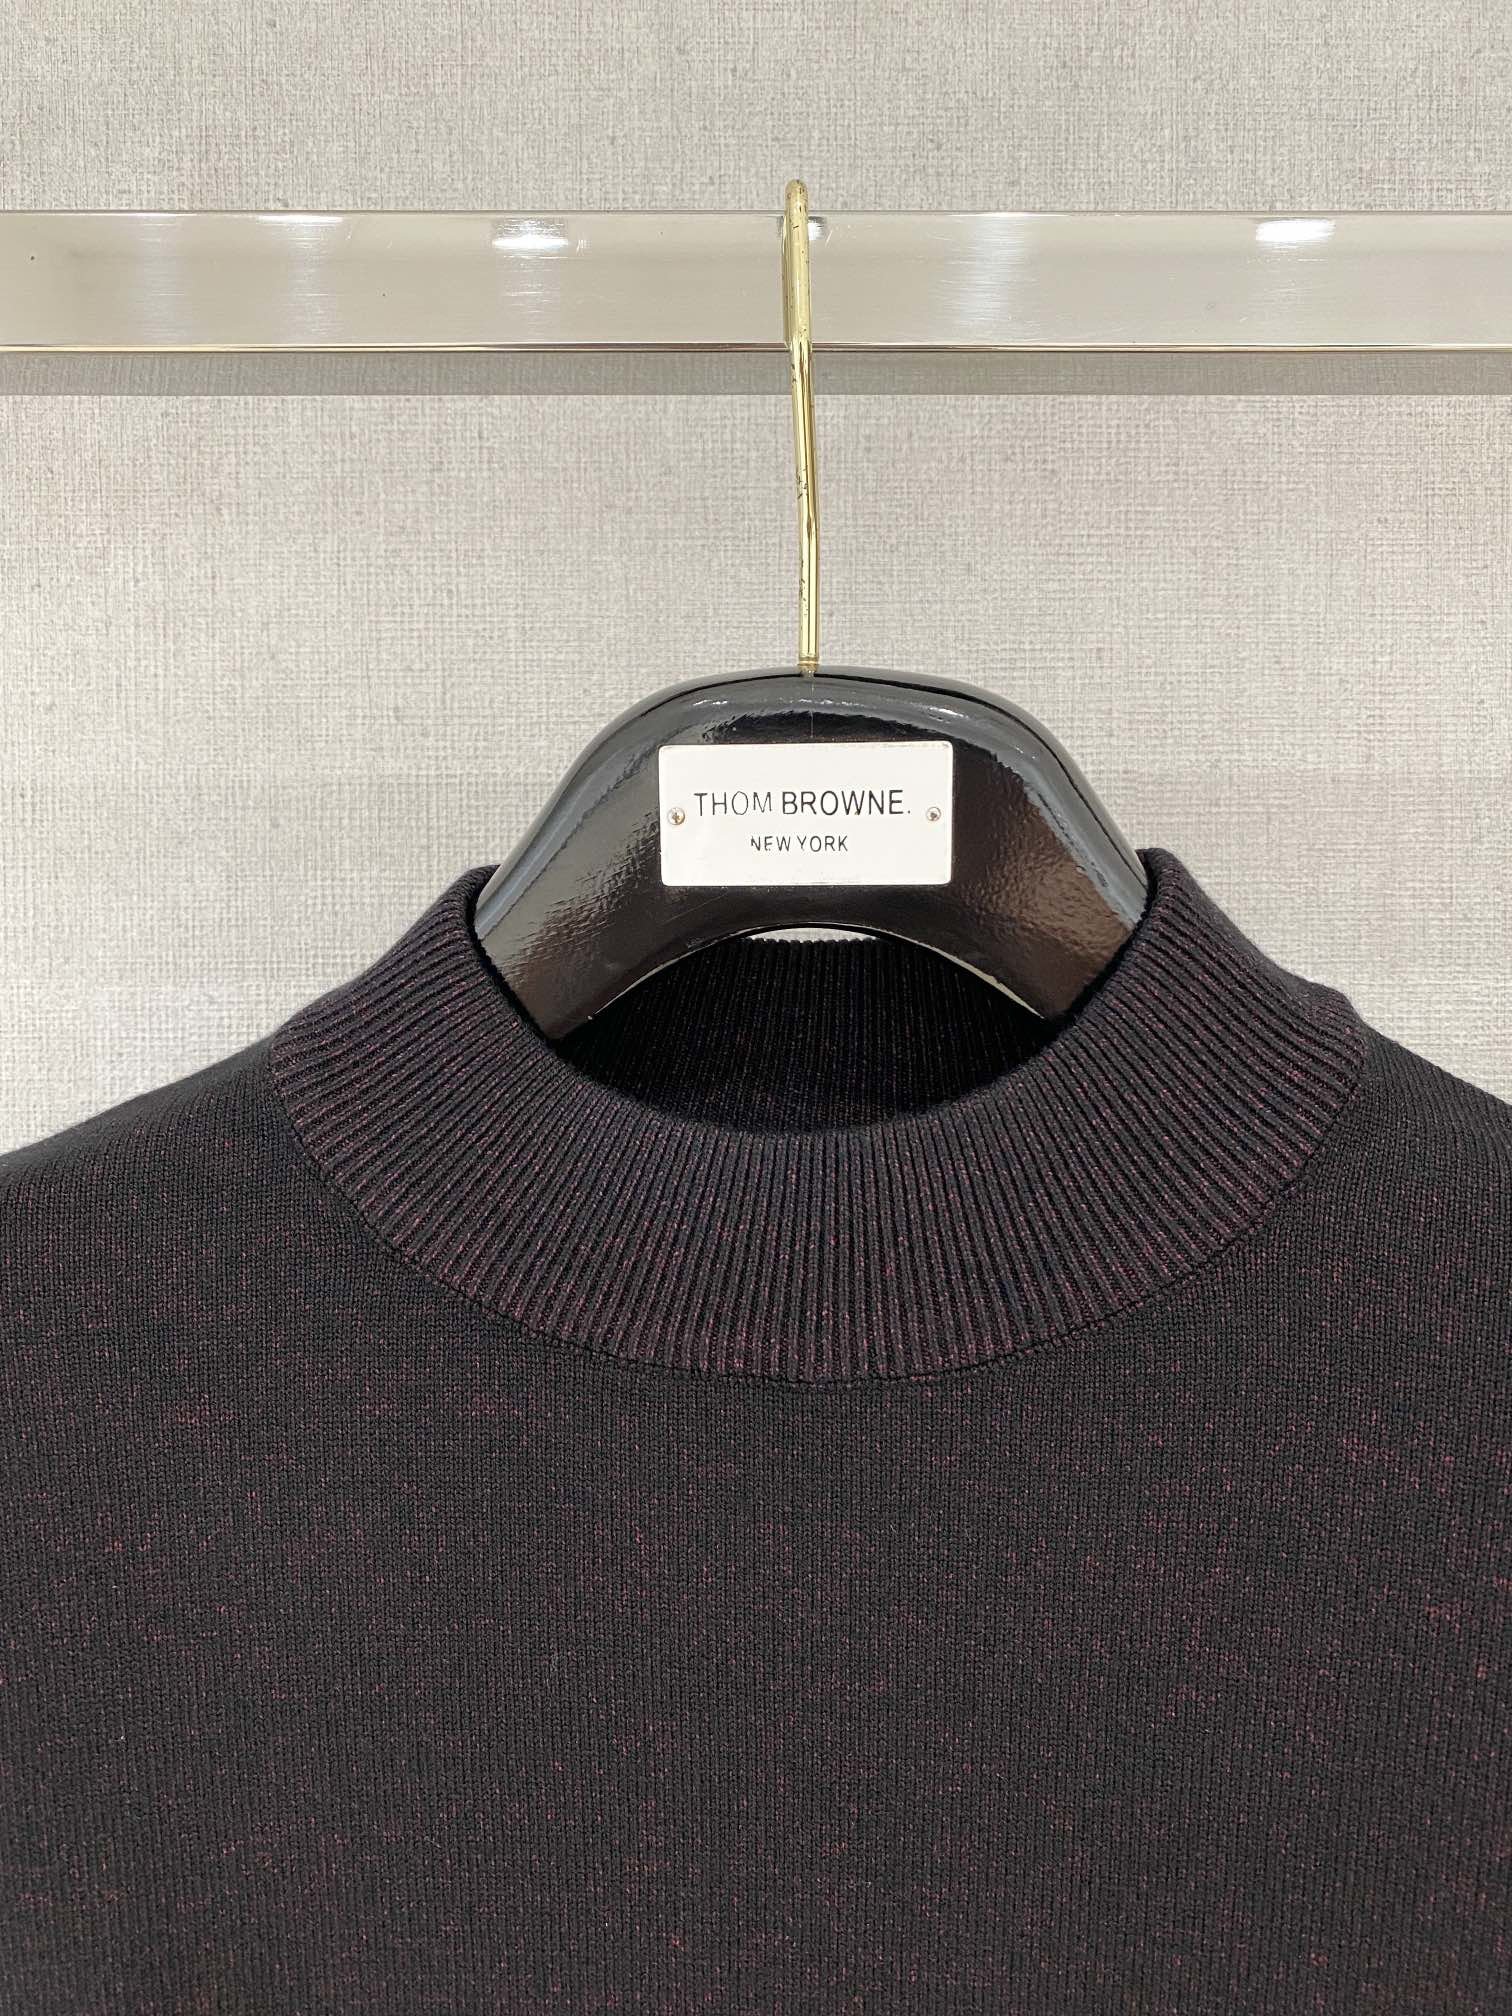 普拉达2023新品羊毛衣具有手感细腻柔软可直接与肌肤接触让暖心的纱线变化出细腻的质感顶级工艺极具特色出彩